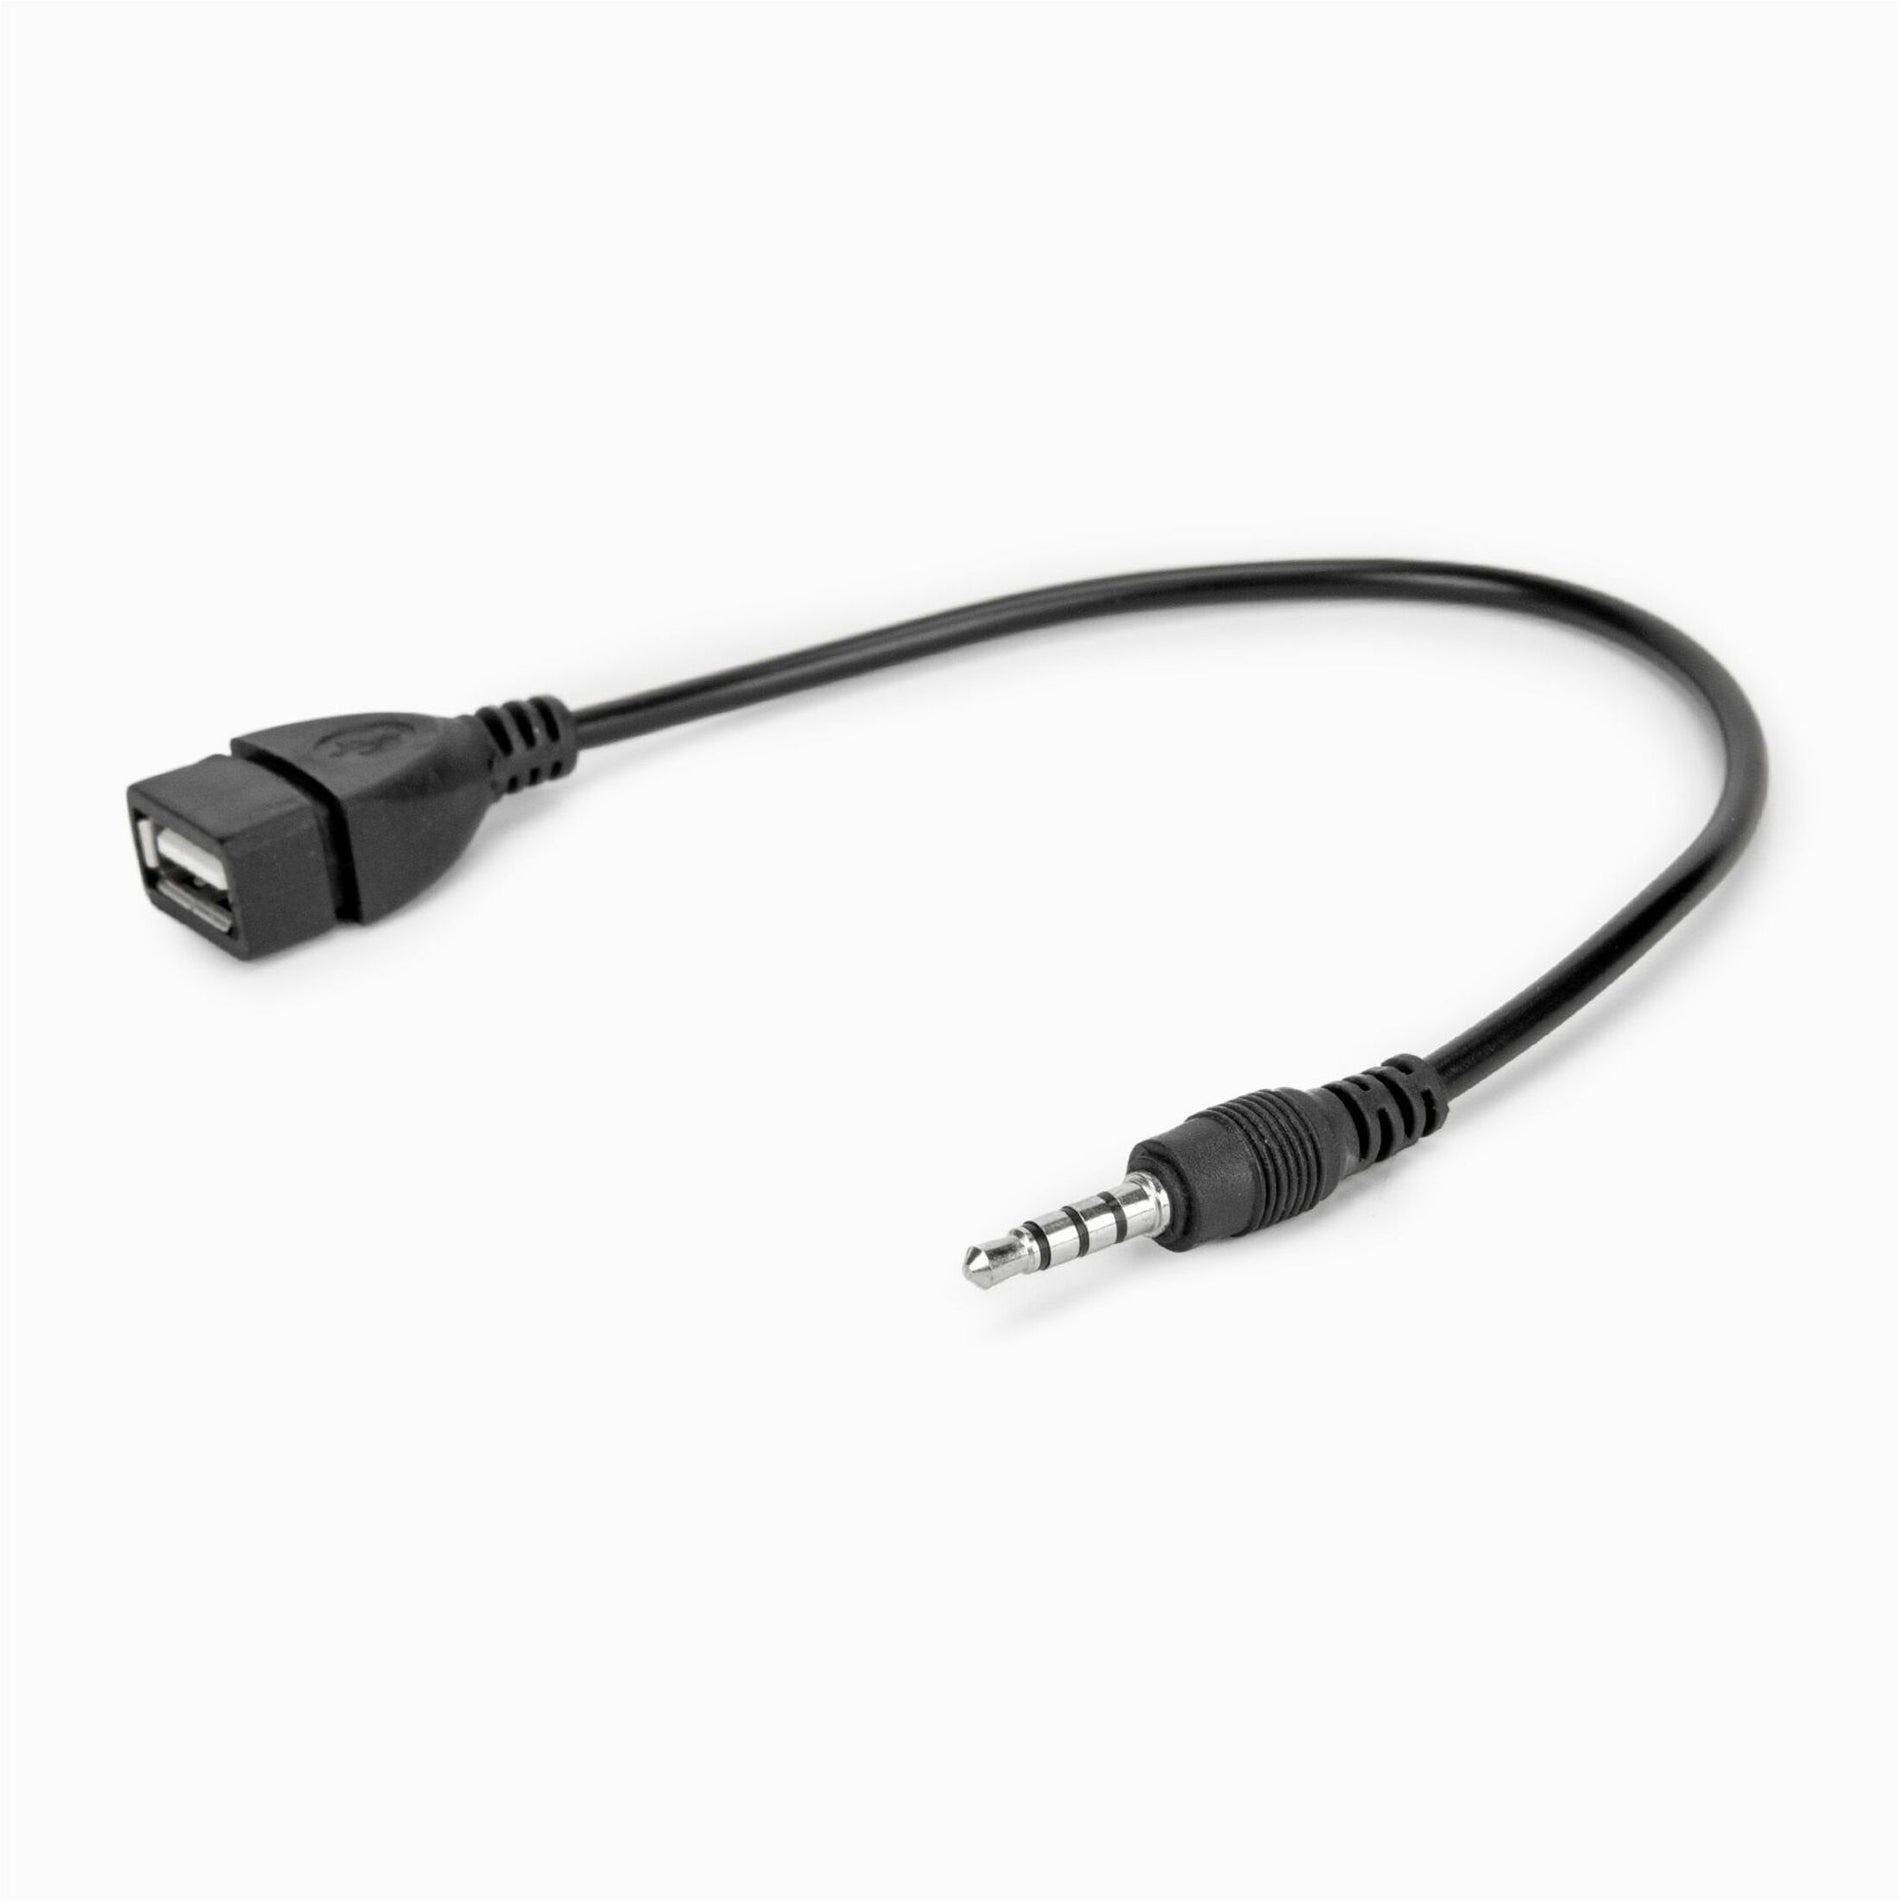 Rocstor Y10A297-B1 USB-A (Femmina) a Jack per cuffie audio da 35 mm (Maschio) Adattatore Adattatore audio di alta qualità